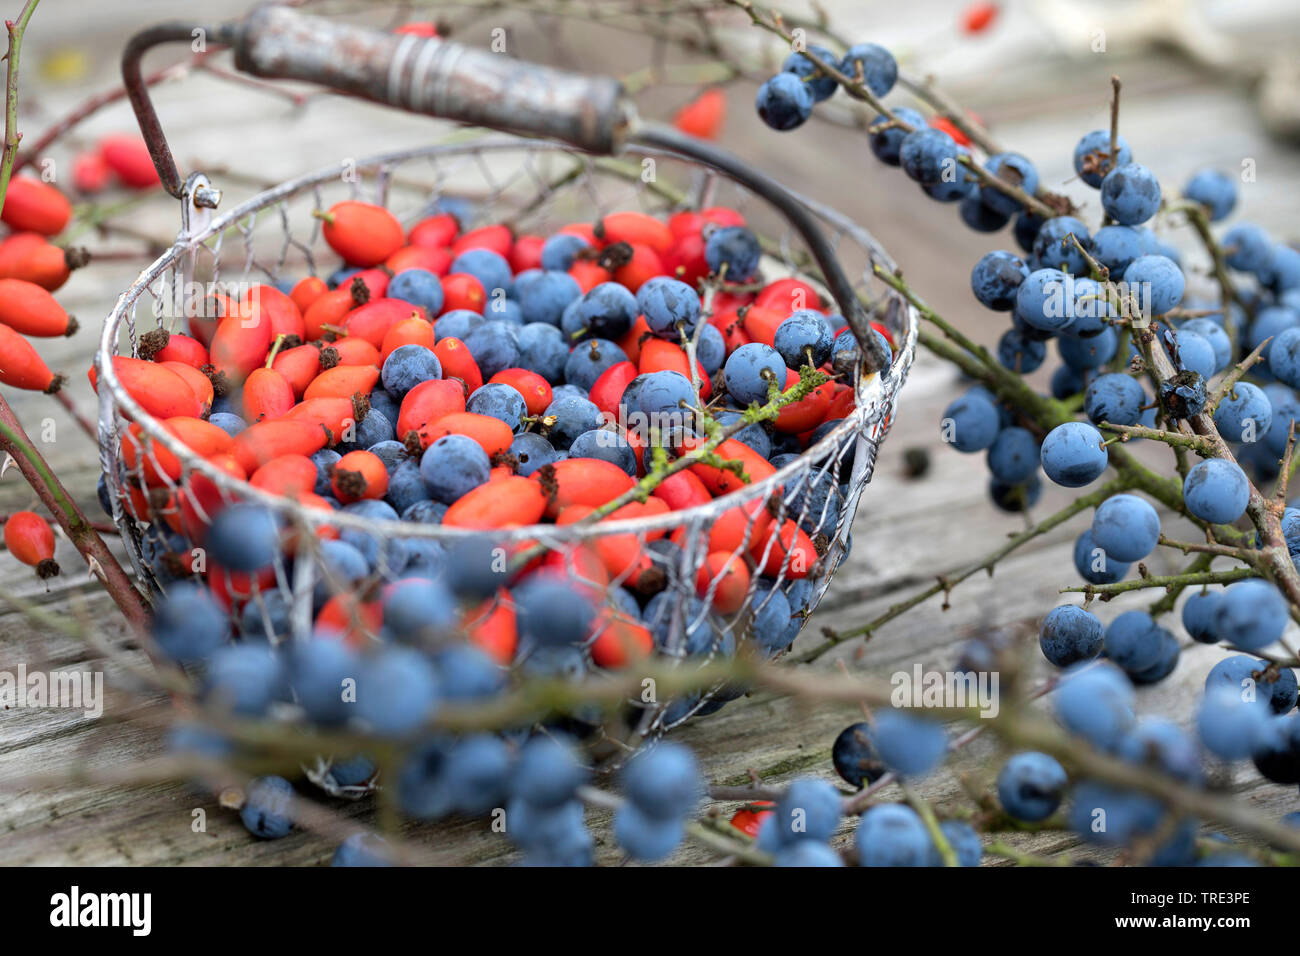 Blackthorn, Schlehe (Prunus spinosa), gesammelte Früchte von blackthorn und Hagebutten in eine Schüssel, Deutschland Stockfoto